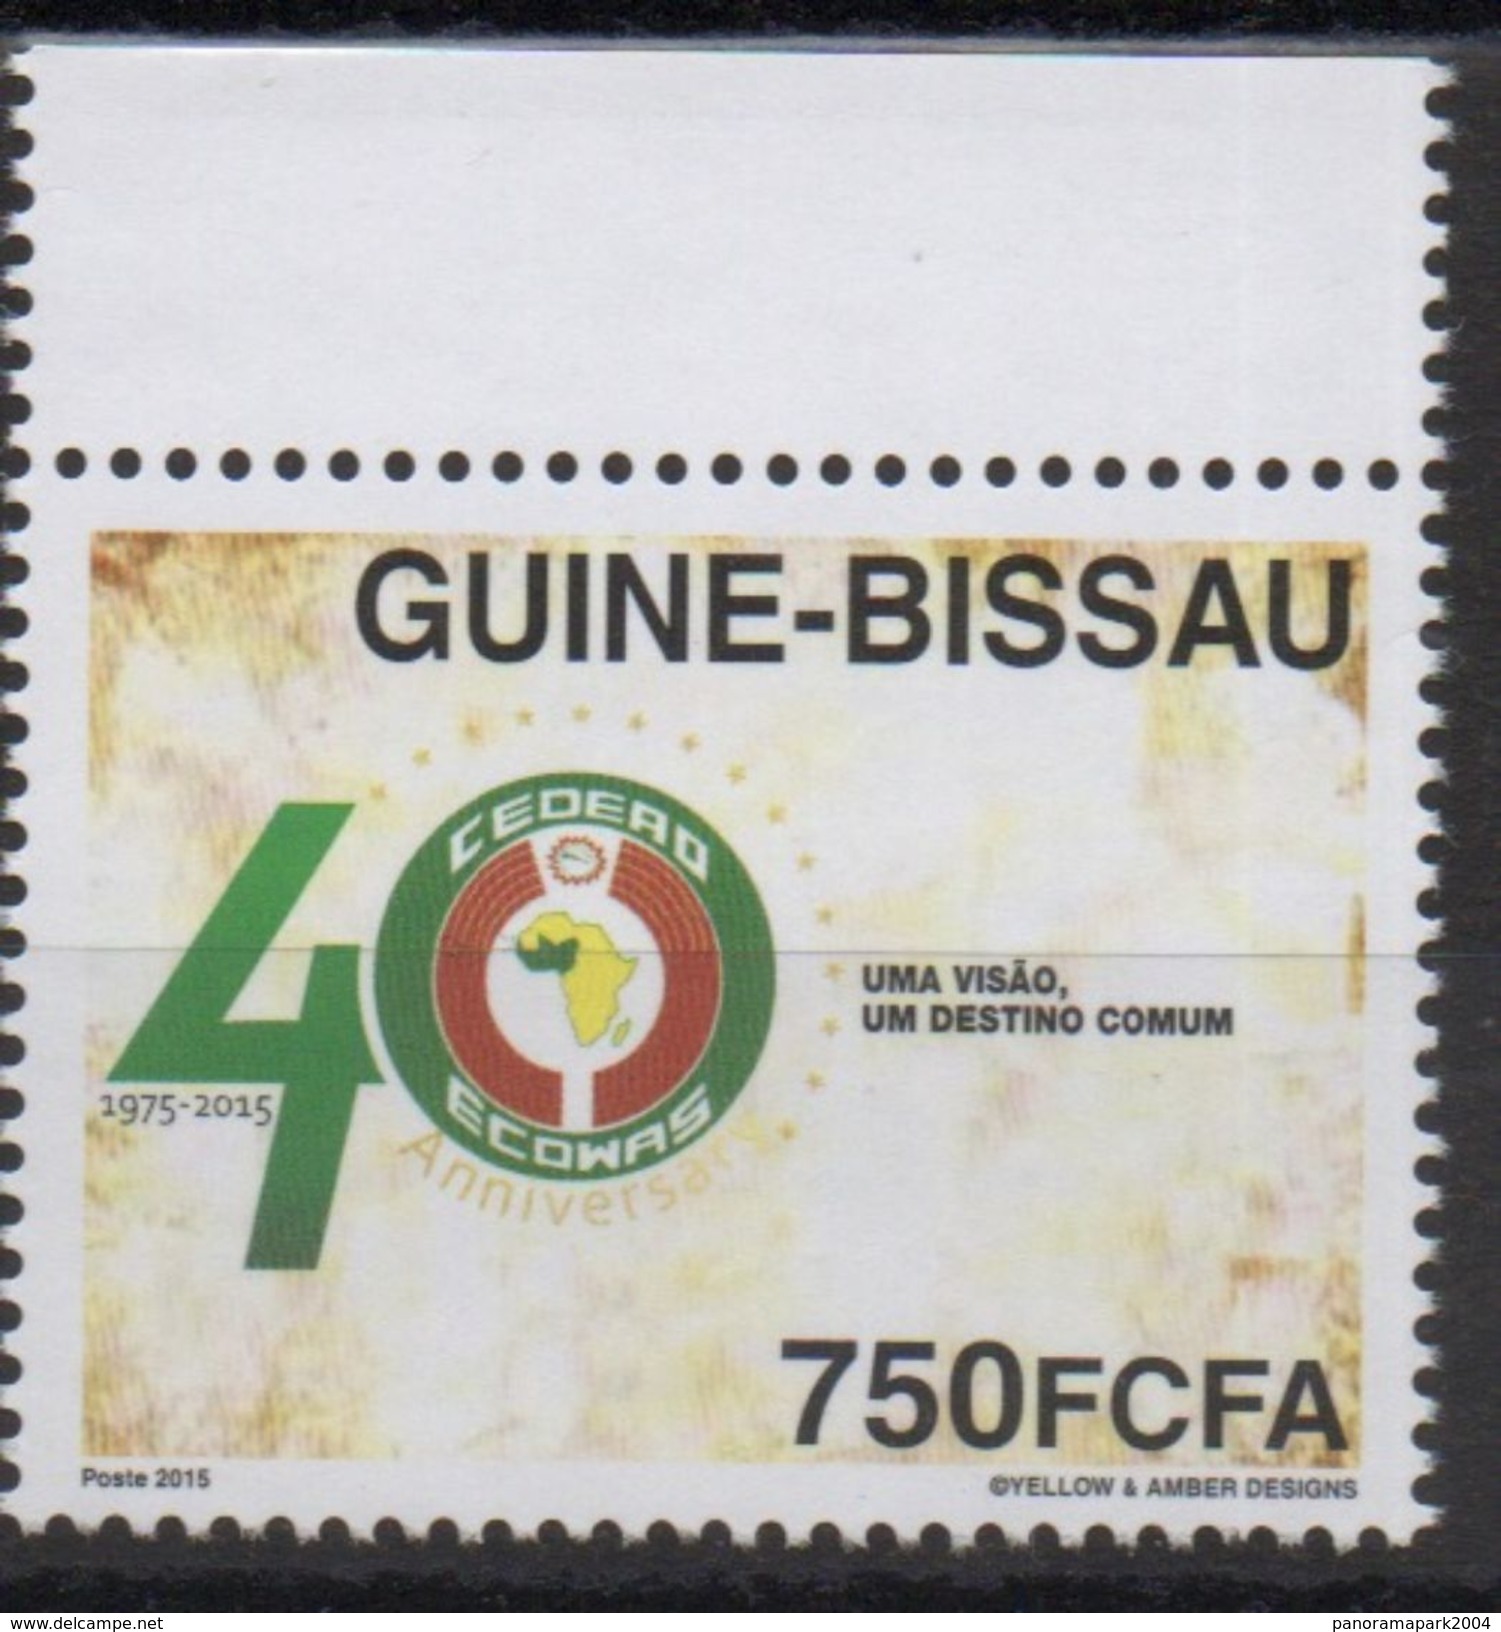 ULTRA RARE UNISSUED 750F VAL !!! Guiné-Bissau Guinea Guinée 2015 Joint Issue CEDEAO ECOWAS - Gemeinschaftsausgaben